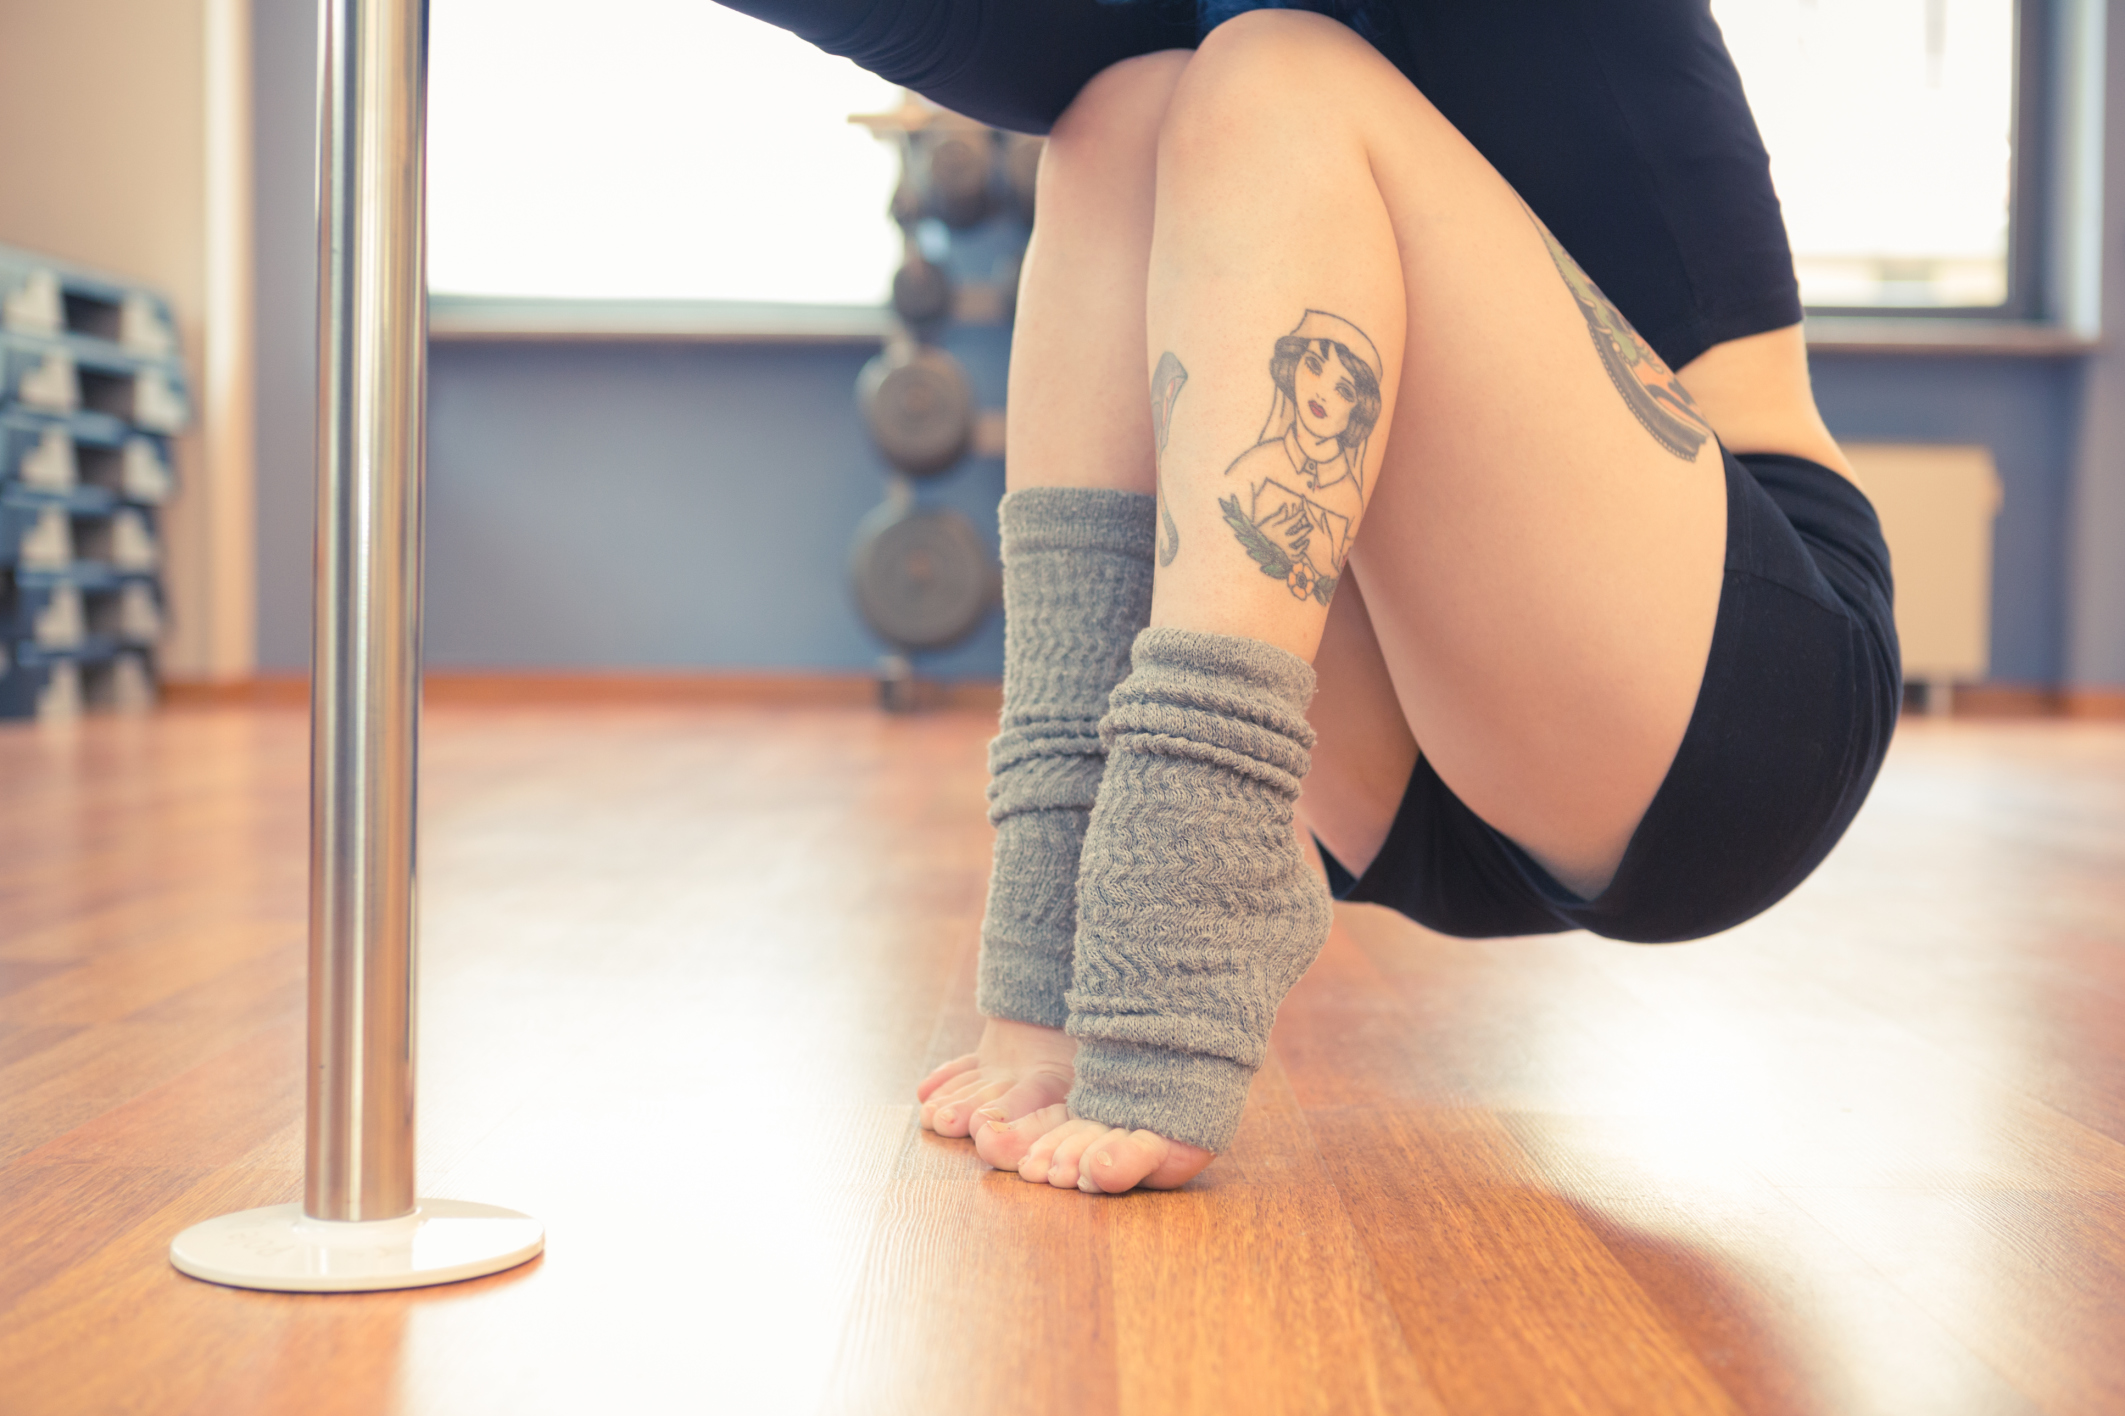 Tatuaggio sulla gamba per le donne: dove farlo e quale scegliere?